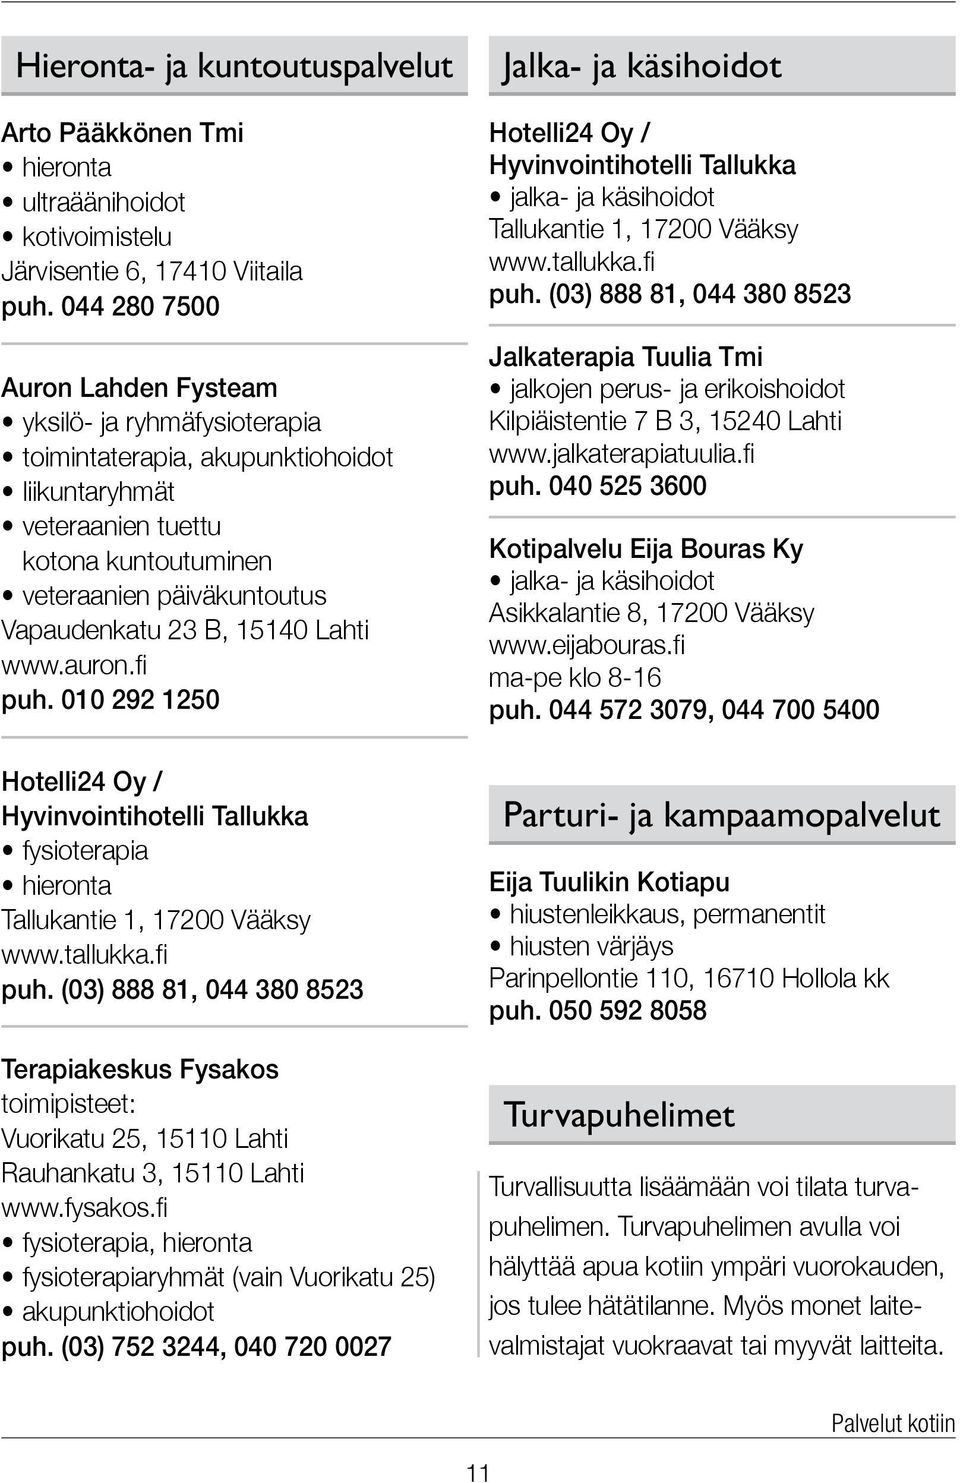 15140 Lahti www.auron.fi puh. 010 292 1250 Hotelli24 Oy / Hyvinvointihotelli Tallukka fysioterapia hieronta Tallukantie 1, 17200 Vääksy www.tallukka.fi puh. (03) 888 81, 044 380 8523 Terapiakeskus Fysakos toimipisteet: Vuorikatu 25, 15110 Lahti Rauhankatu 3, 15110 Lahti www.